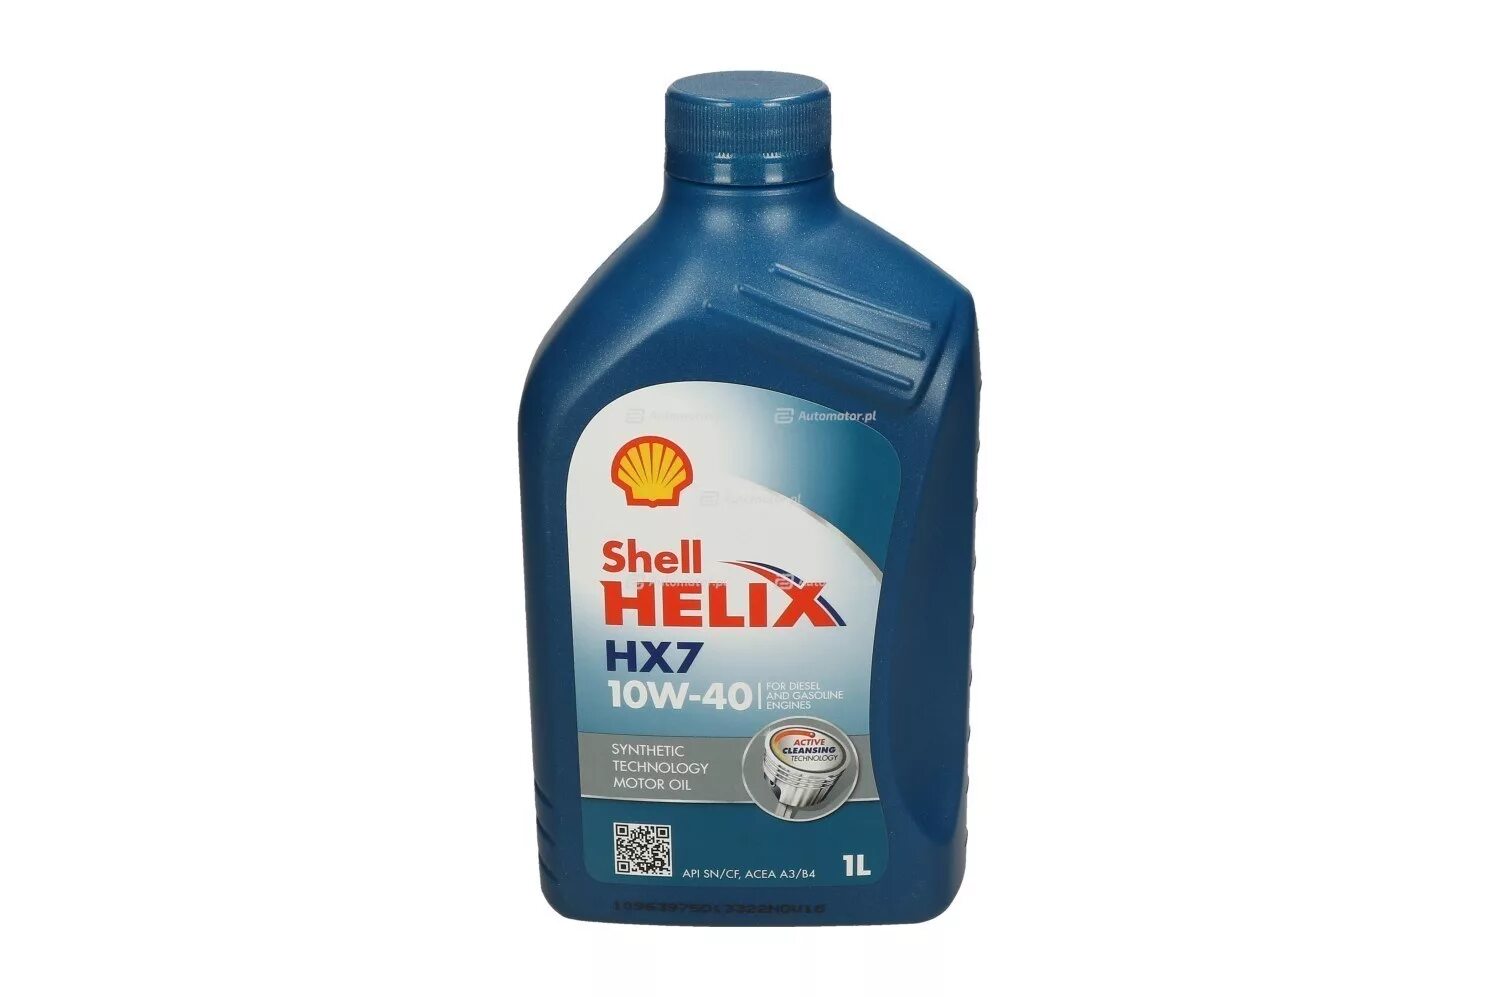 Масло Шелл Хеликс 10w 40 полусинтетика. Shell Helix hx7 5w-30 1л. Helix hx7 10w-40 полусинтетика 10w-40. Шелл Хеликс ультра 10w 40 полусинтетика.